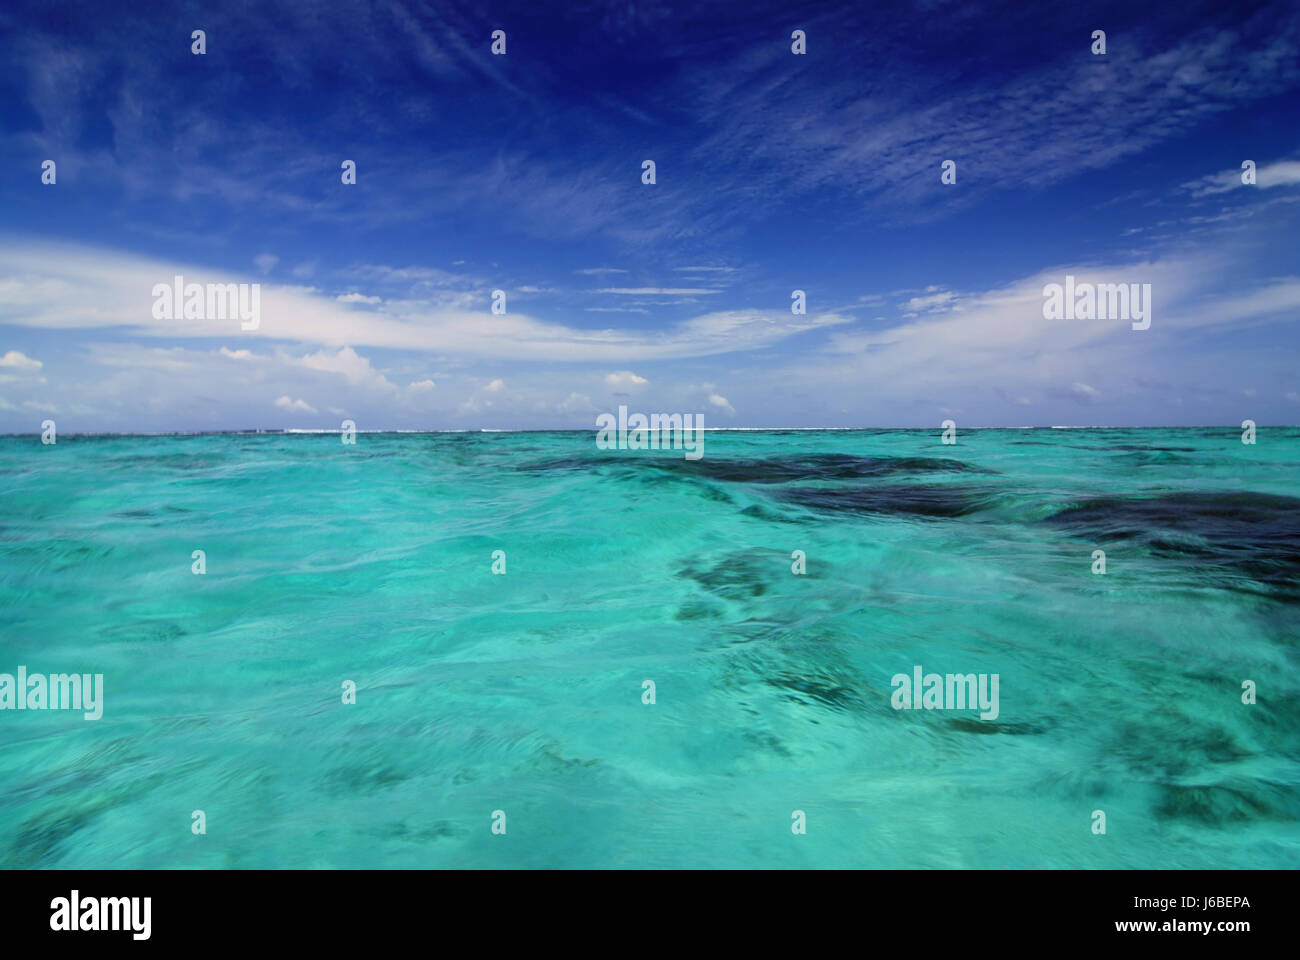 Maldives firmament tropical exotique de l'eau salée de ciel bleu mer océan eau Maldives Banque D'Images